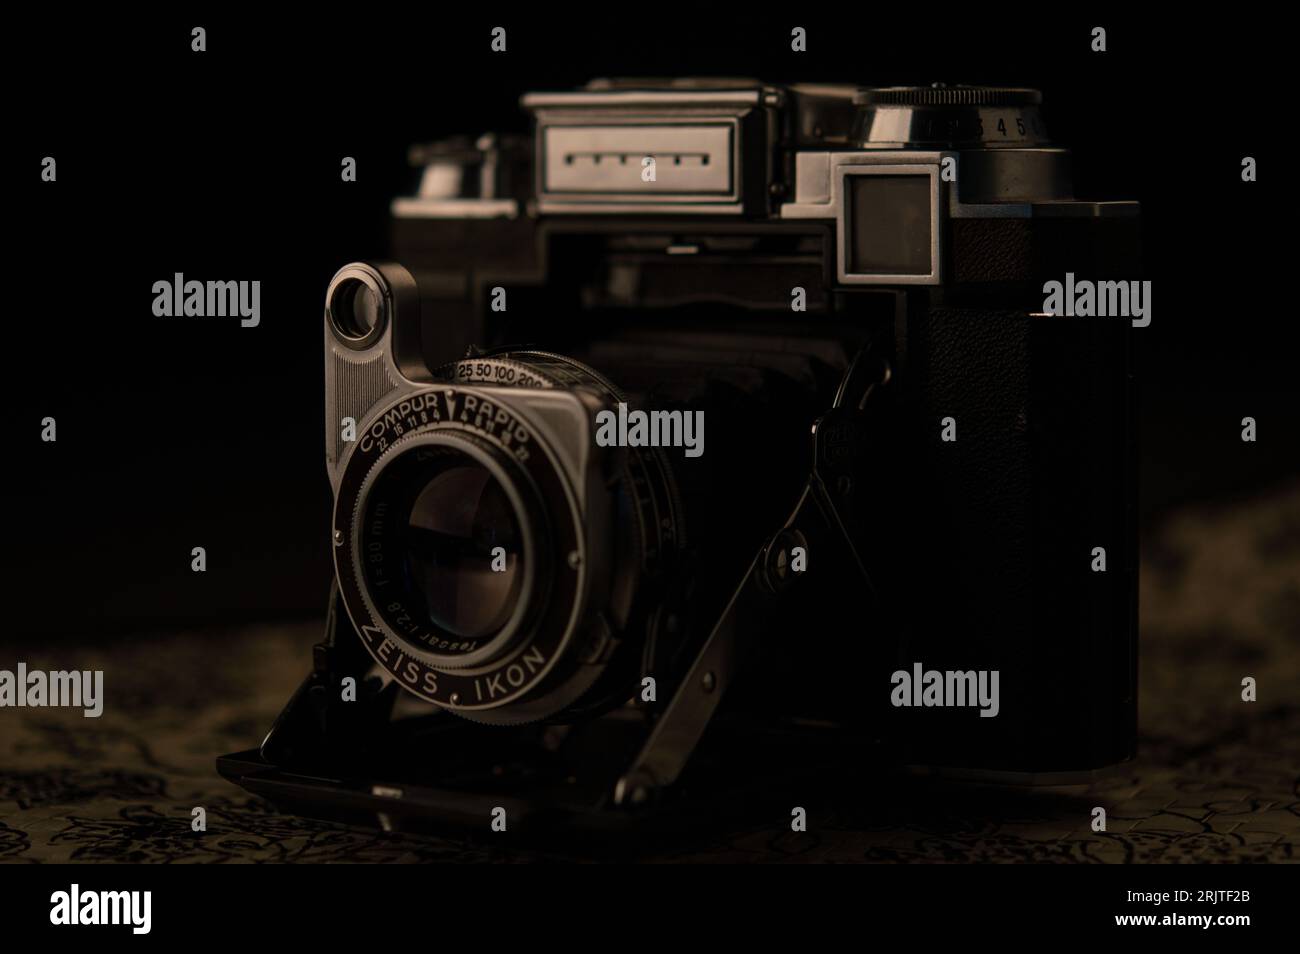 Primo piano di una vecchia fotocamera d'epoca con obiettivo Compur Rapid in un ambiente poco illuminato Foto Stock